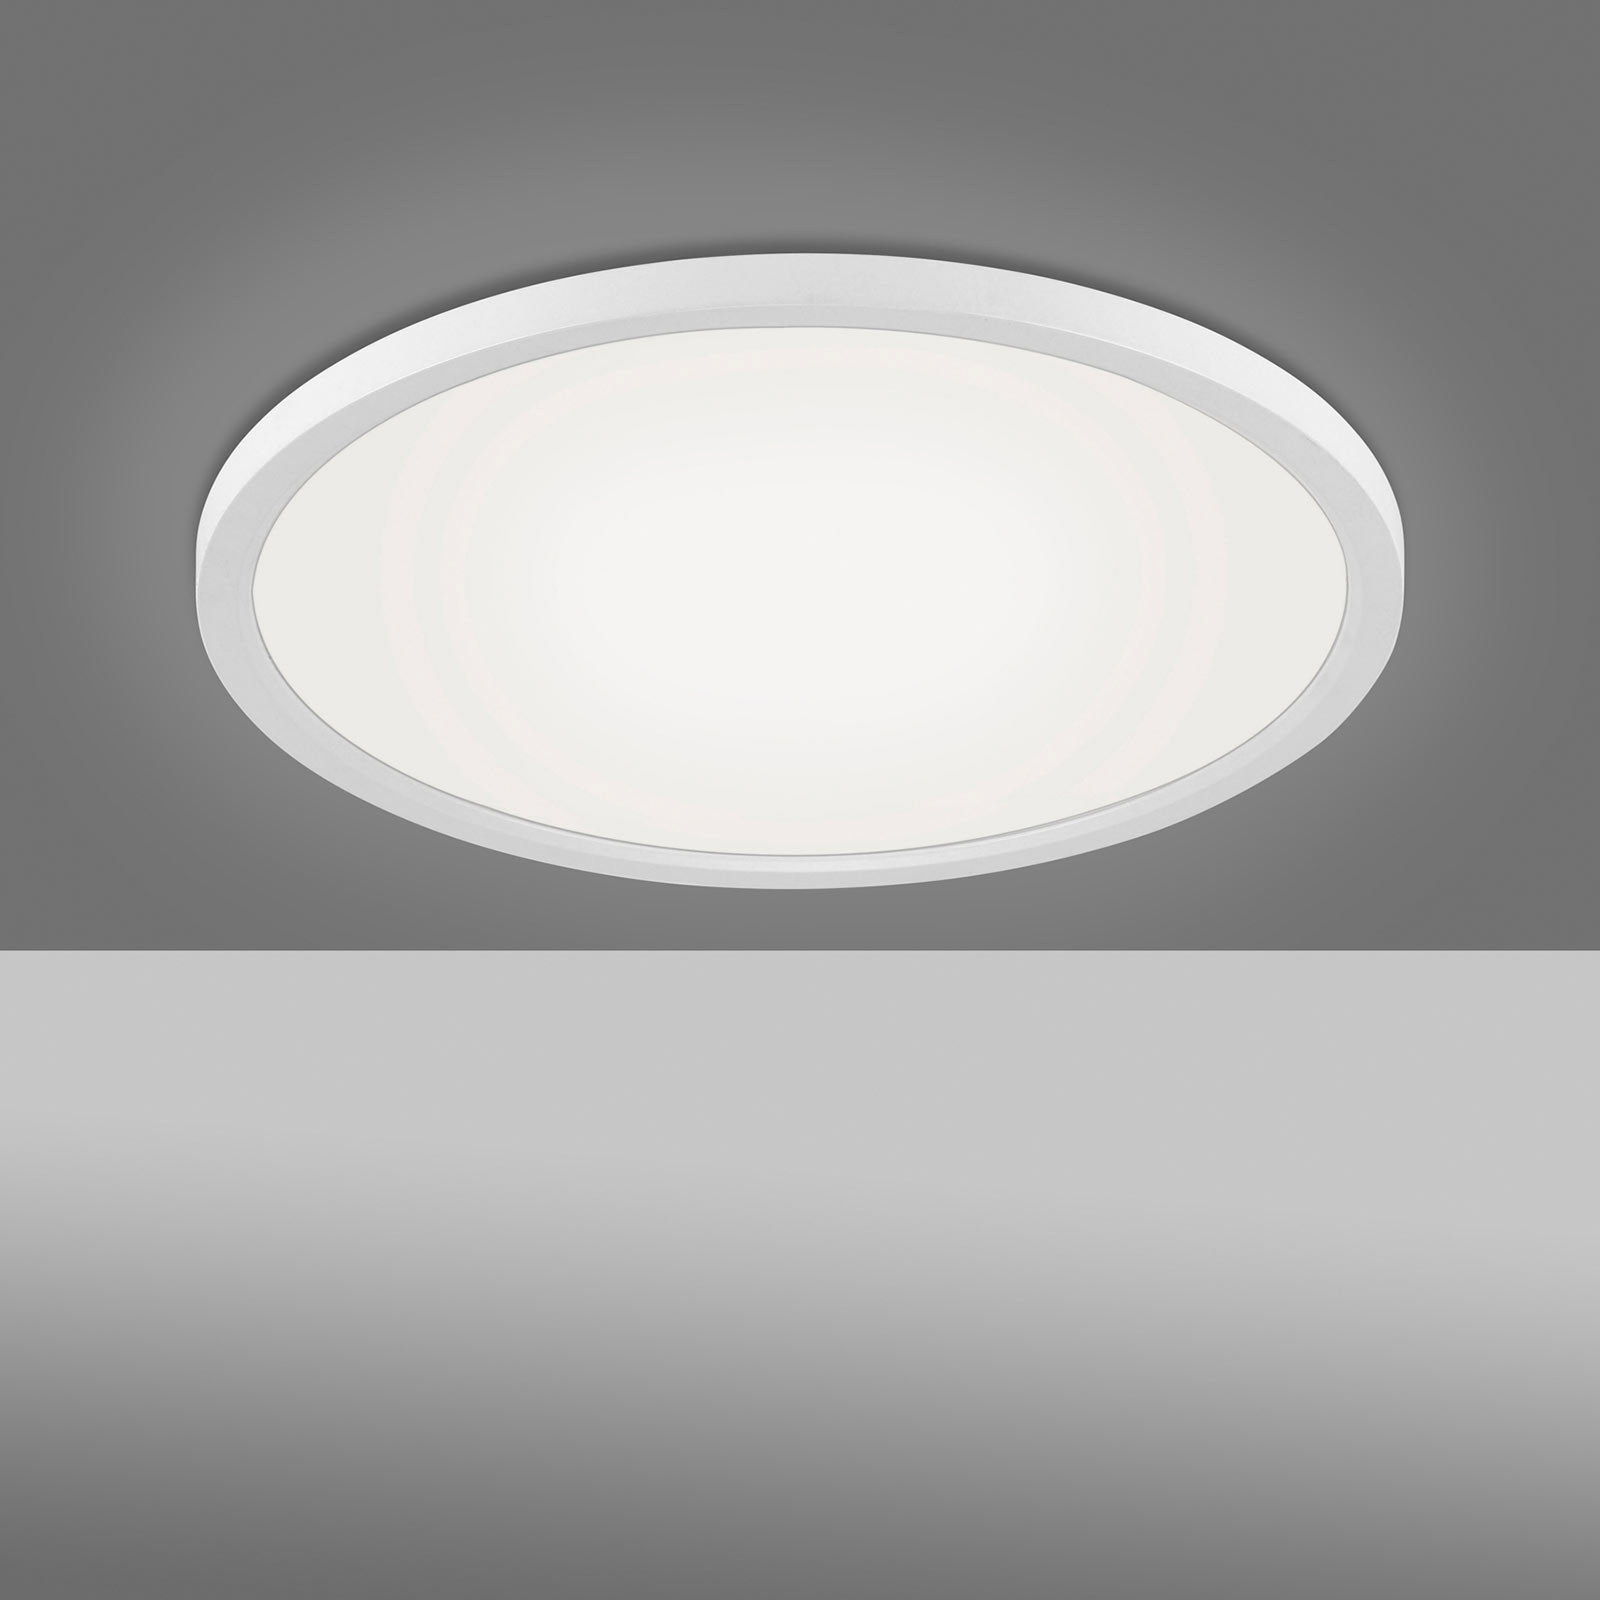 LED-Deckenleuchte Flat CCT, Ø 40 cm, weiß